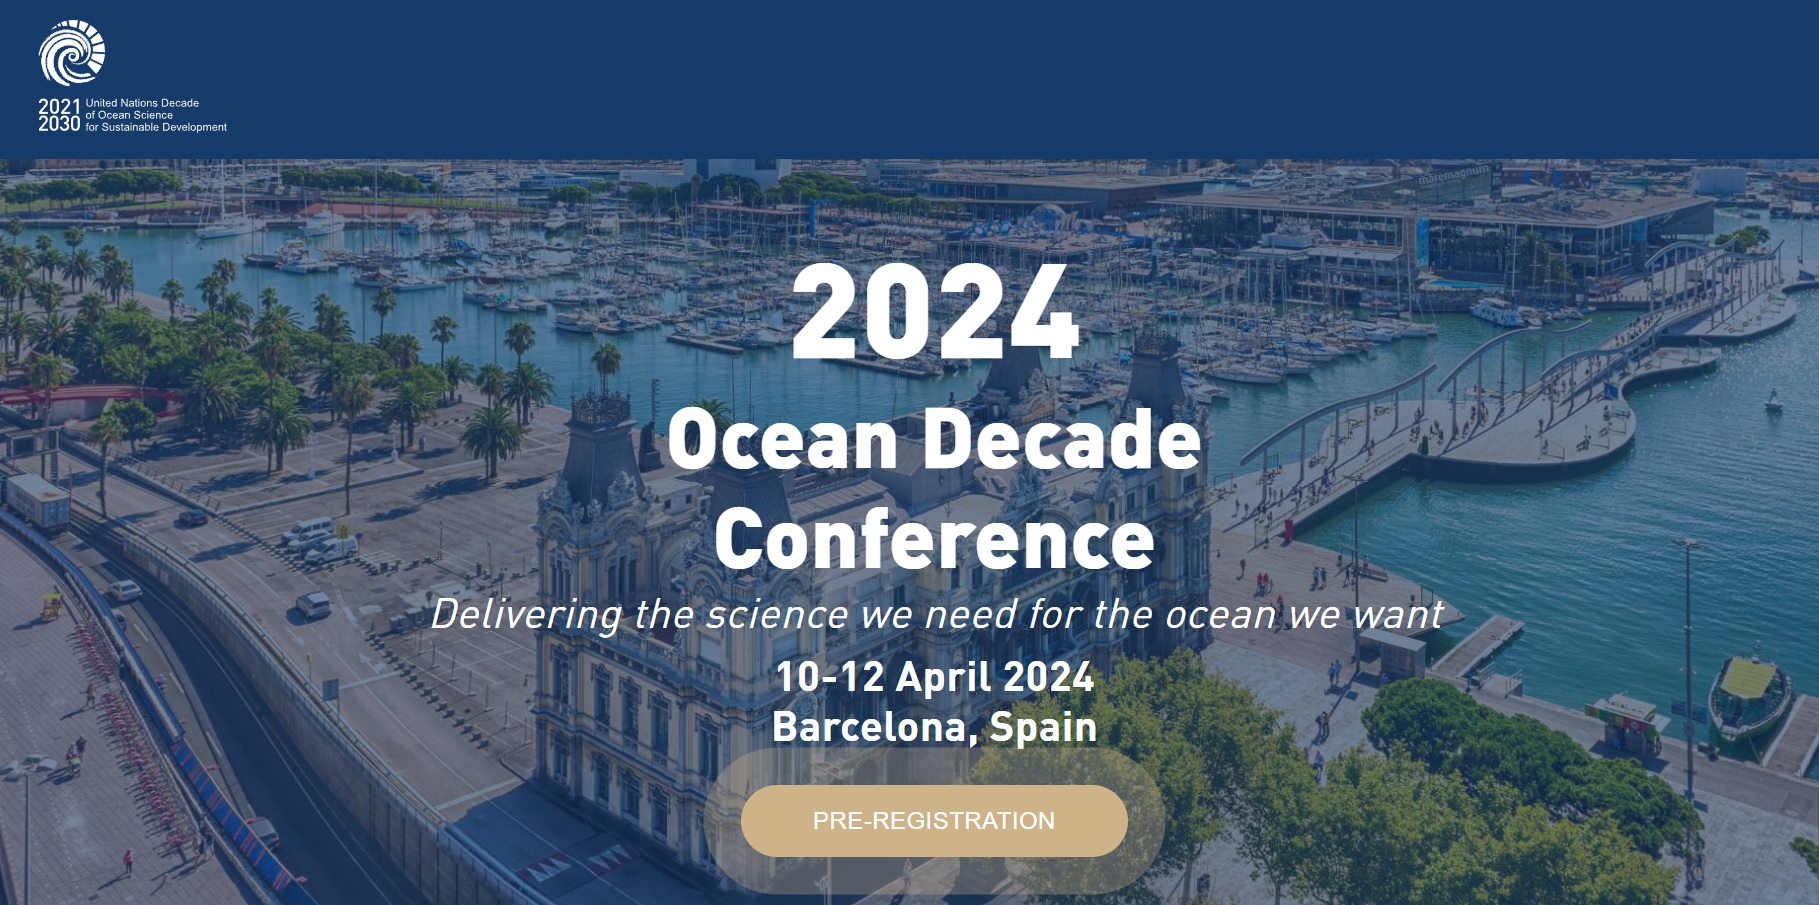 Se abre el periodo de preinscripción para la Conferencia de la Década de los Océanos 2024 en Barc...